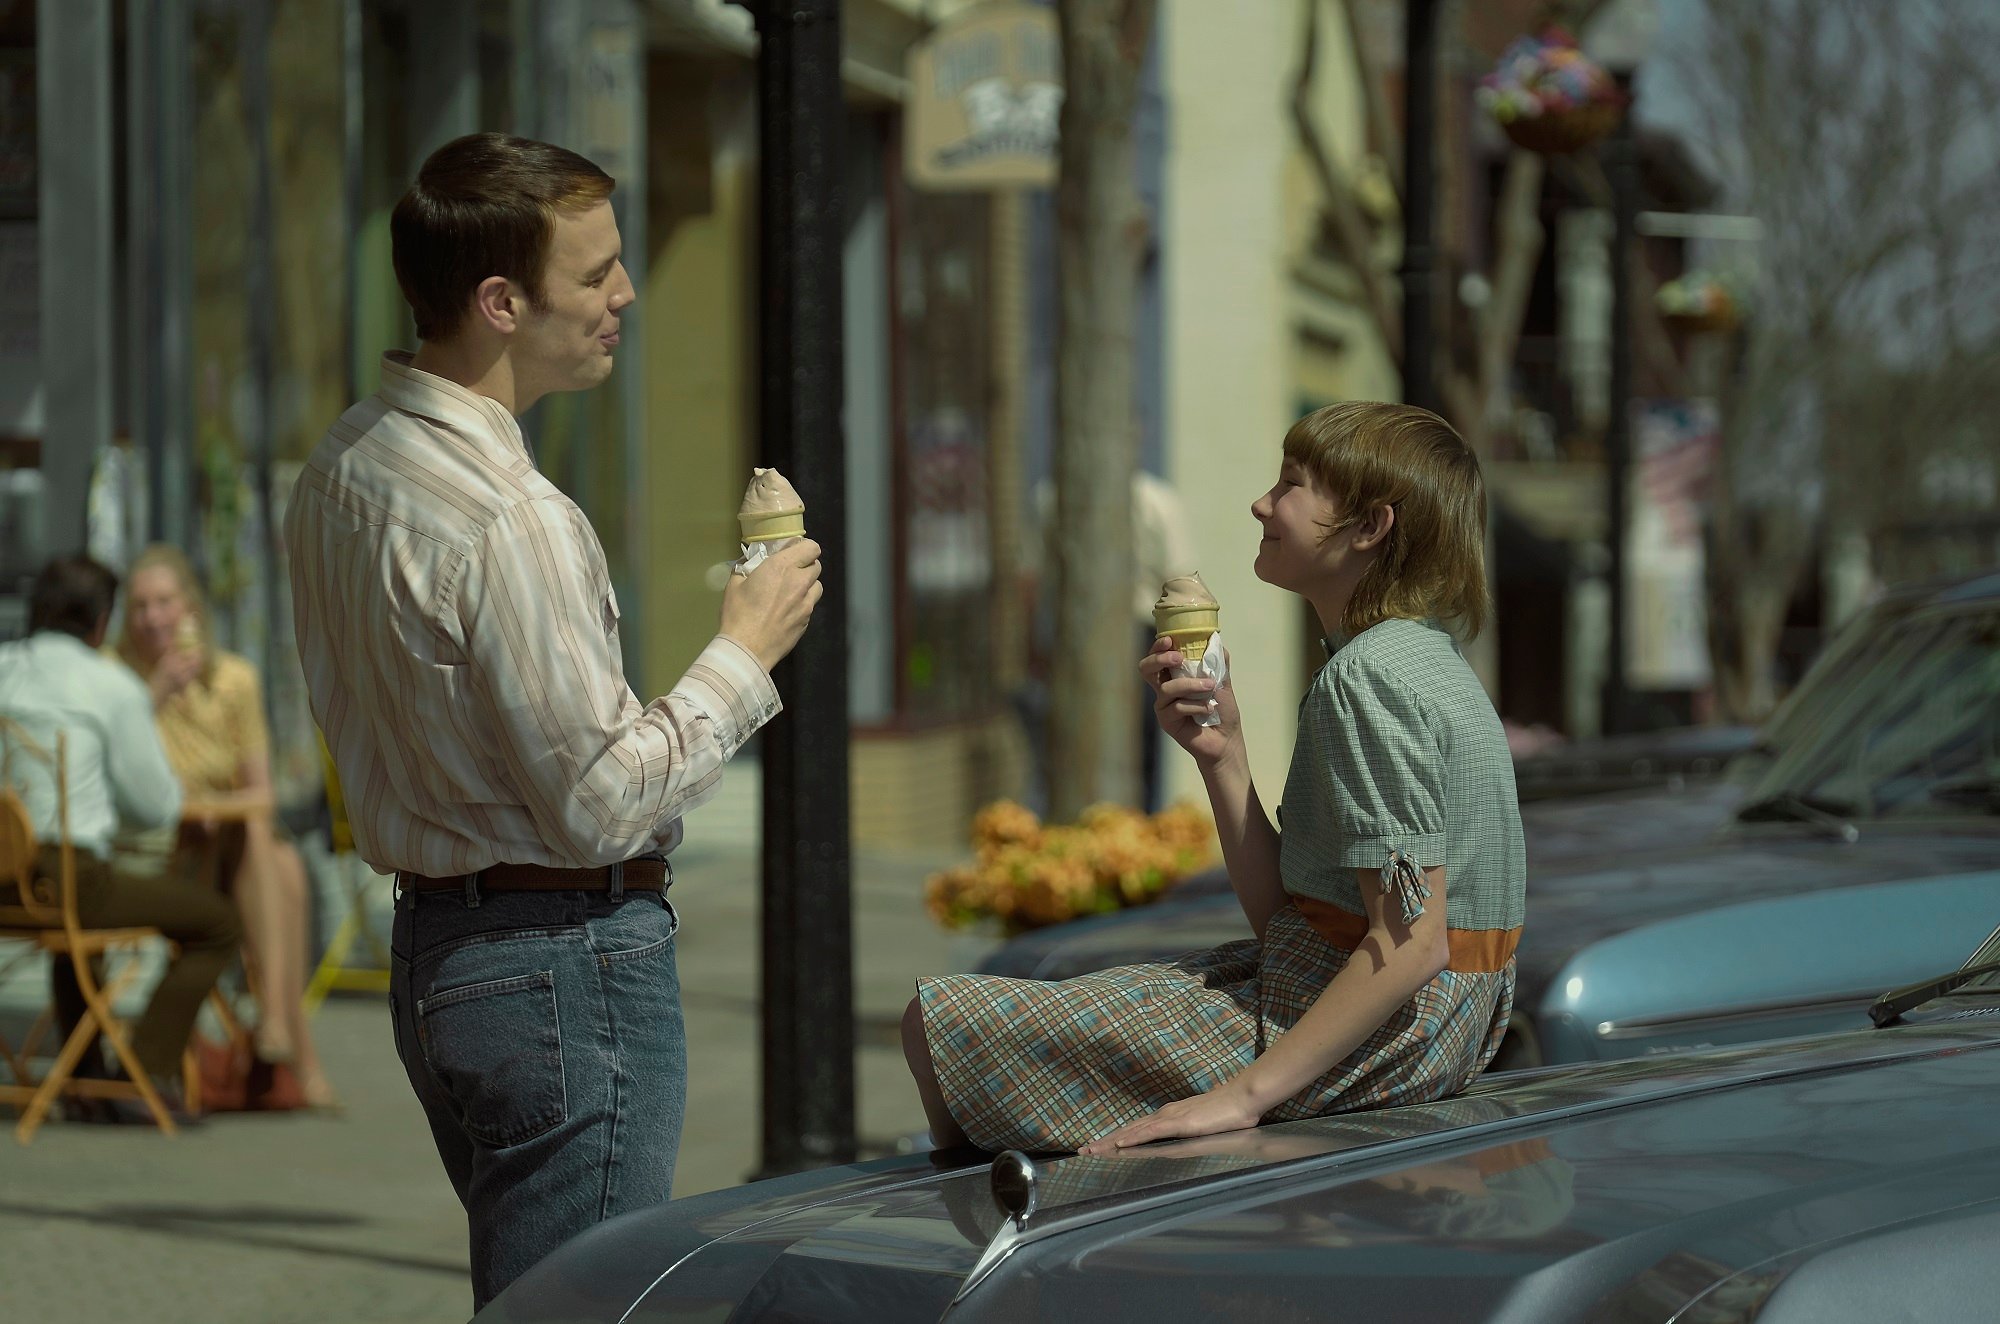 「家族の友」ロバート・バーヒトルド役のジェイク・レイシーと若いジャン・ブロバーグ役のヘンドリックス・ヤンシーが一緒にアイスクリームを食べる